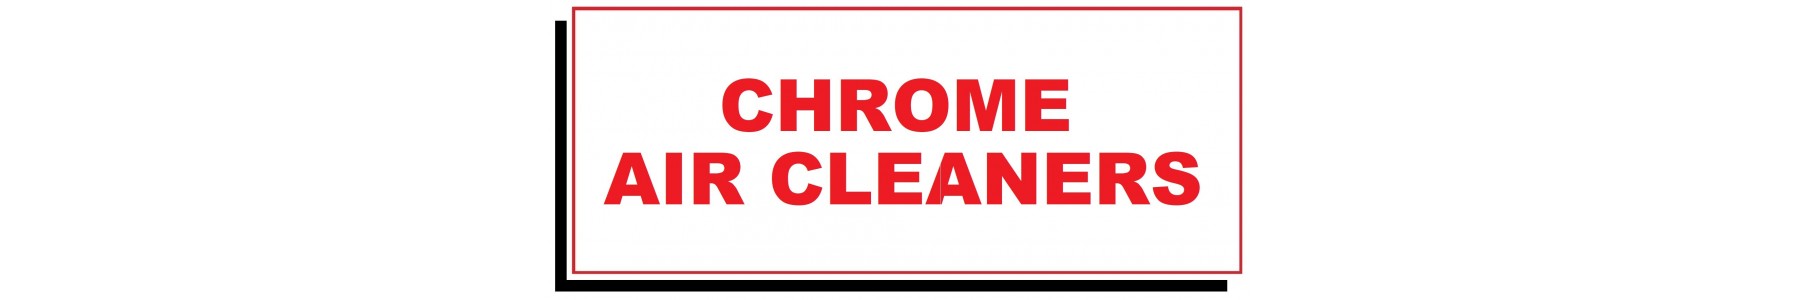 CHROME AIR CLEANERS